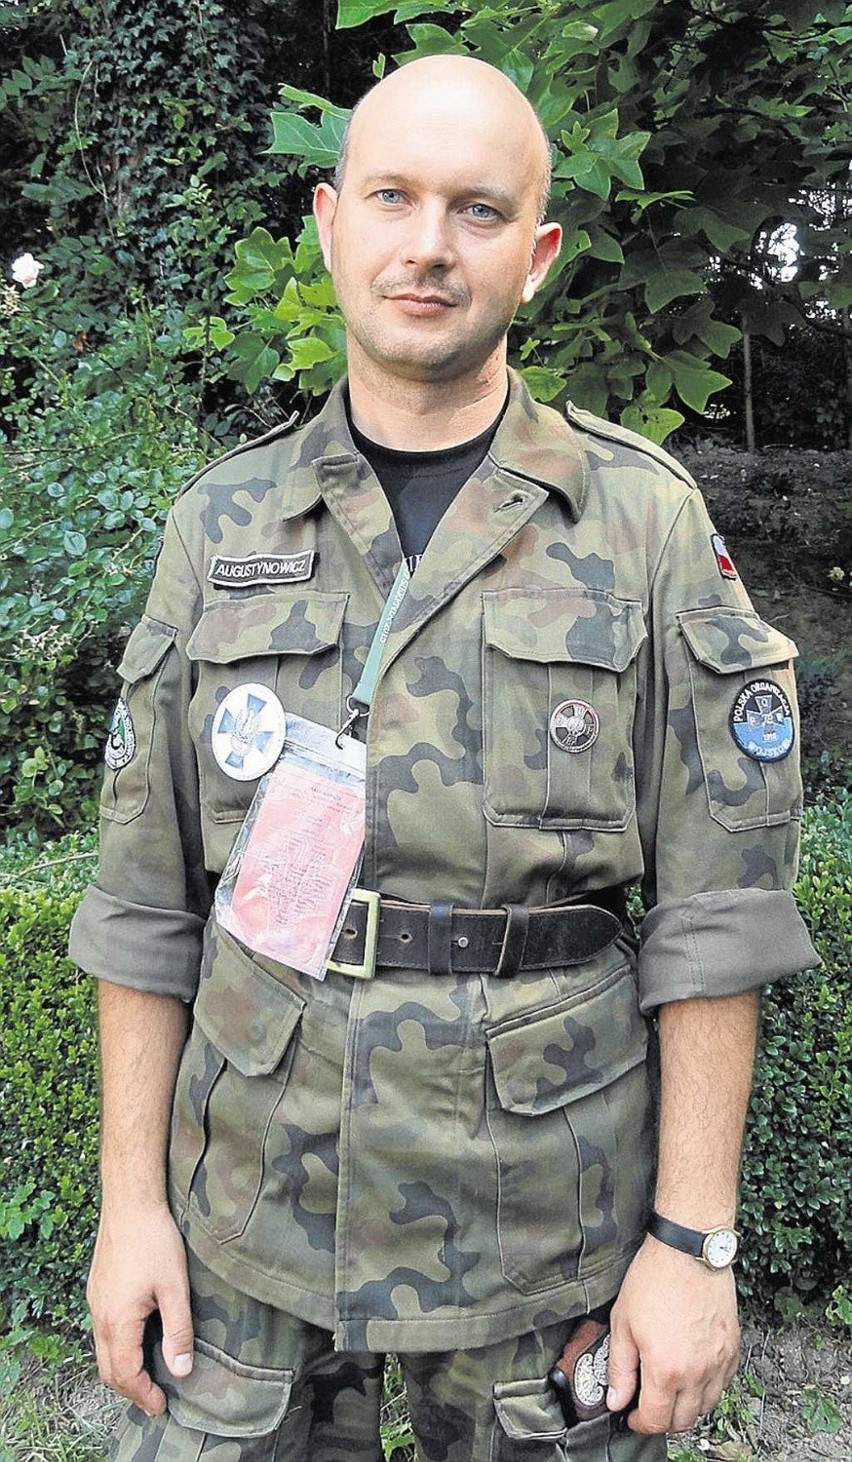 Komendant Piotr Augustynowicz